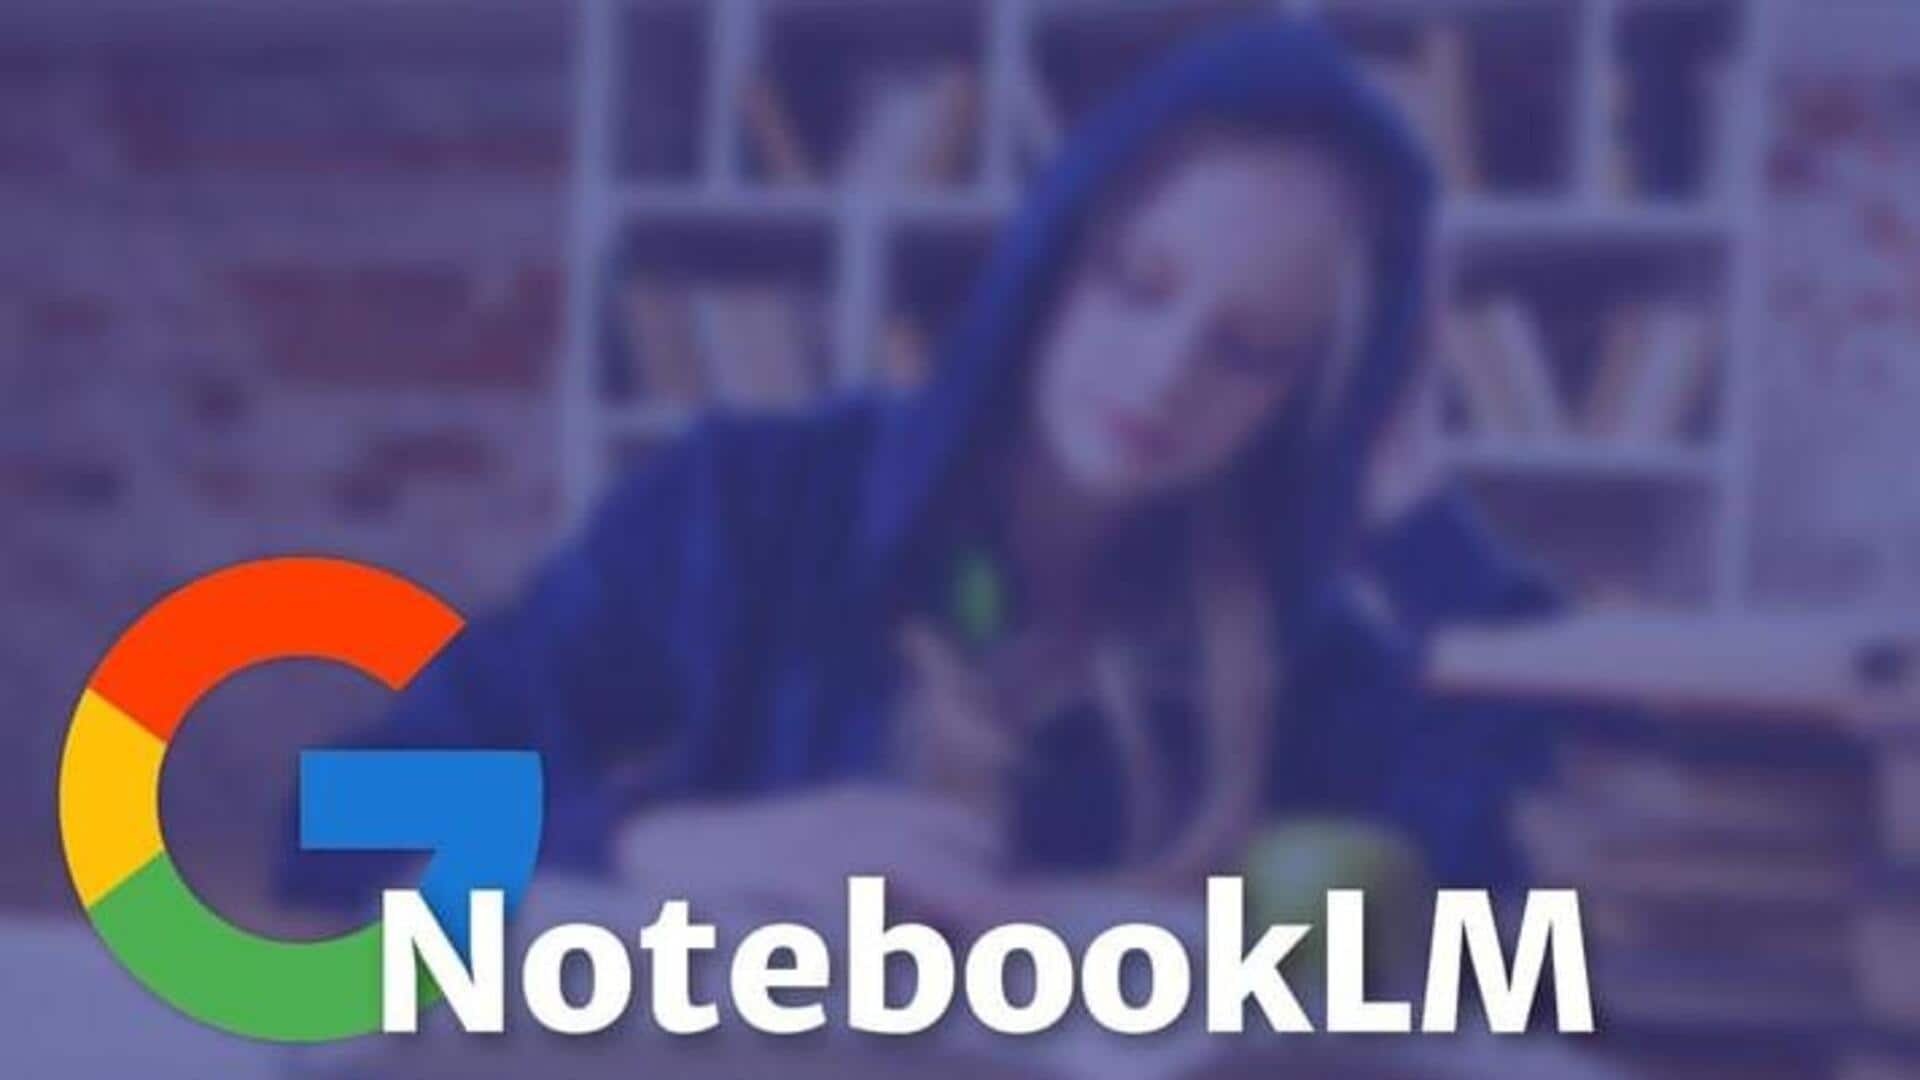 அமெரிக்க பயனாளர்களுக்கு AI வசதியுடன் கூடிய 'NotebookLM' சேவையை அறிமுகப்படுத்திய கூகுள்